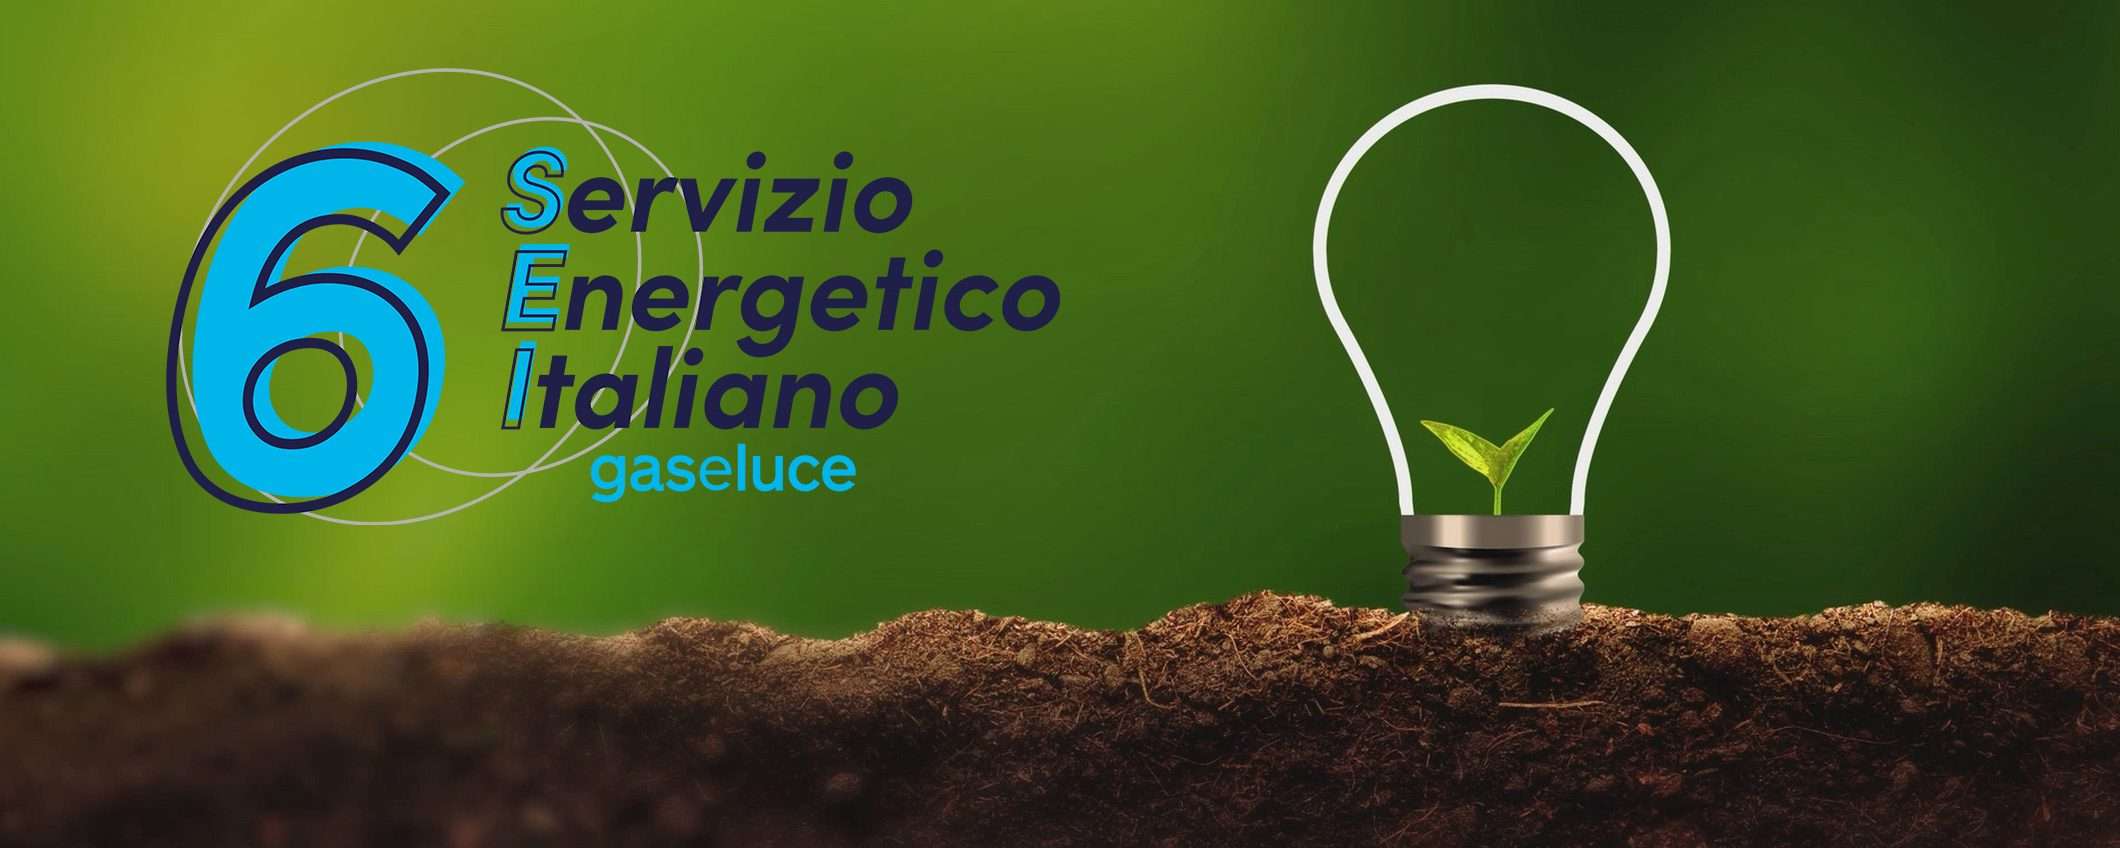 Servizio Energetico Italiano: multa di 900.000 euro